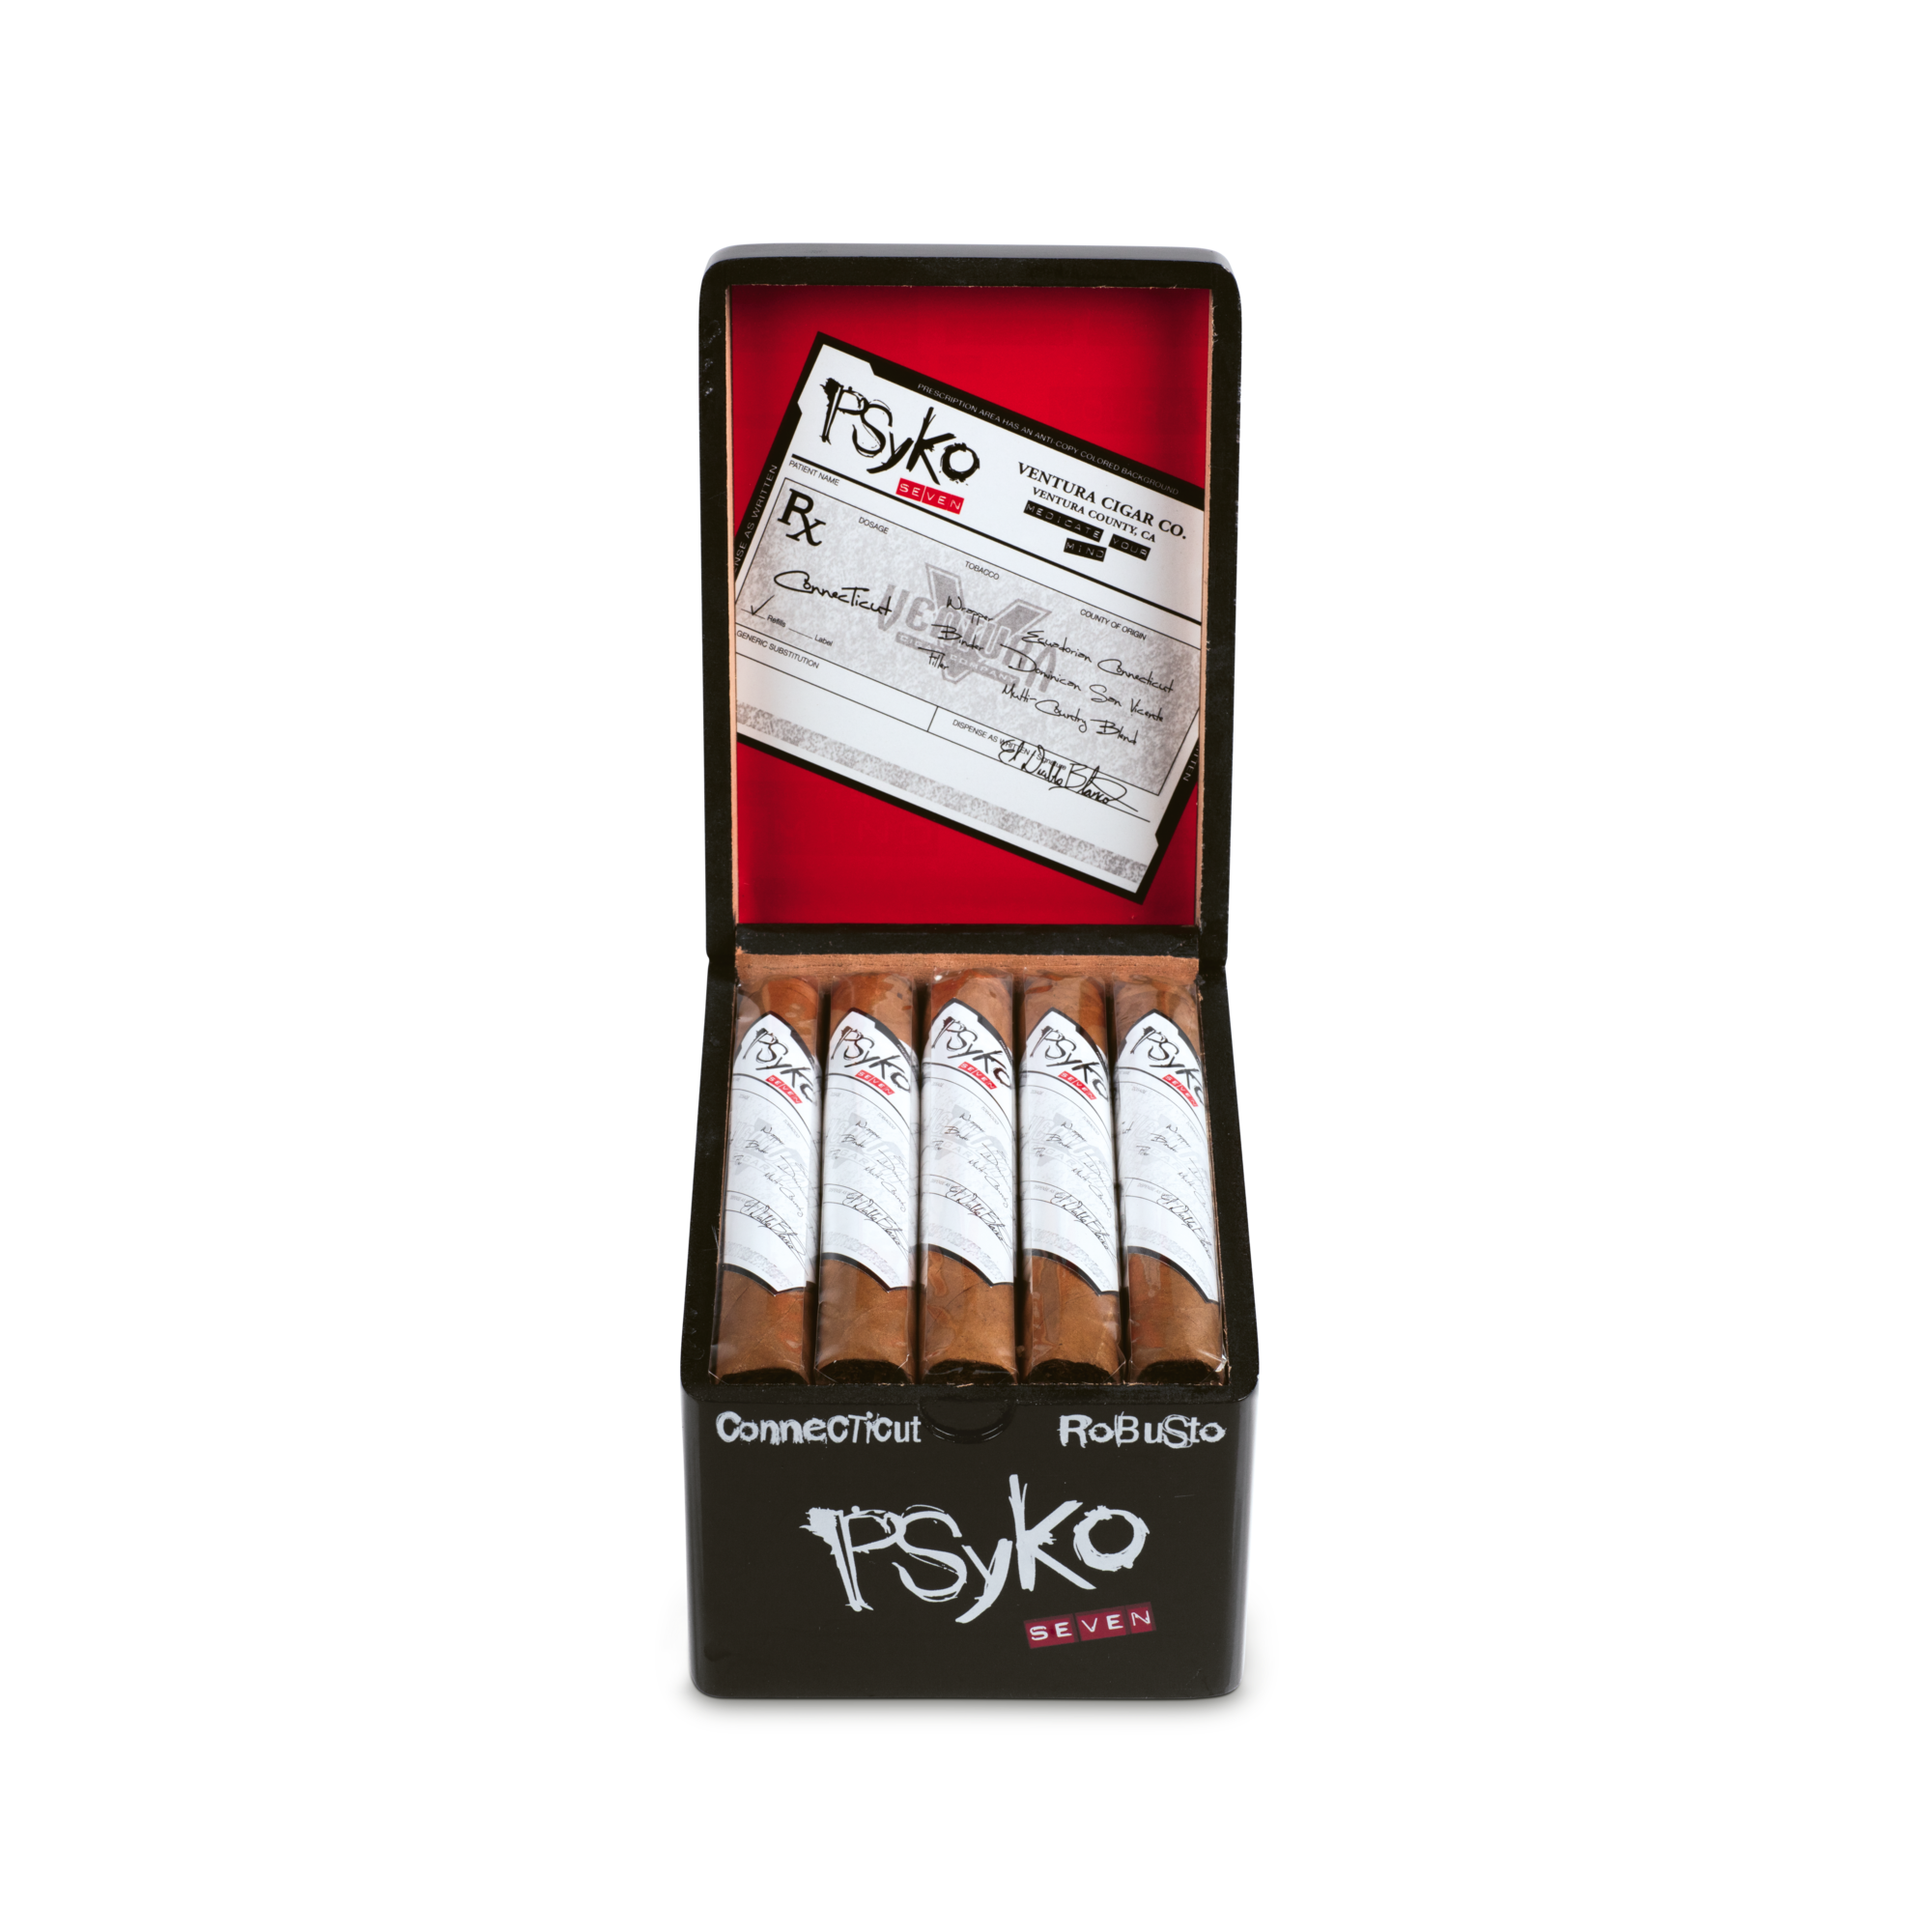 Psyko Seven Connecticut Robusto Zigarren Box geöffnet